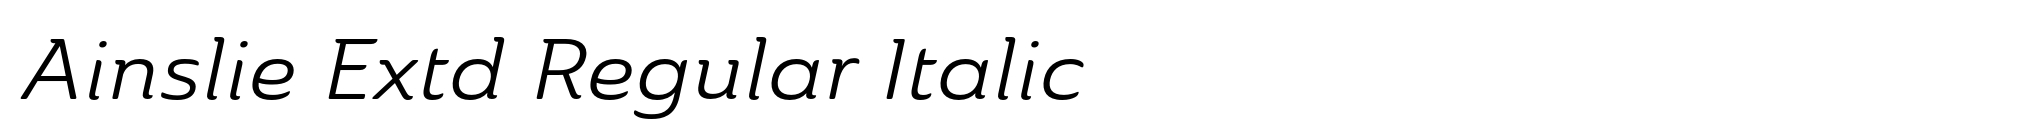 Ainslie Extd Regular Italic image